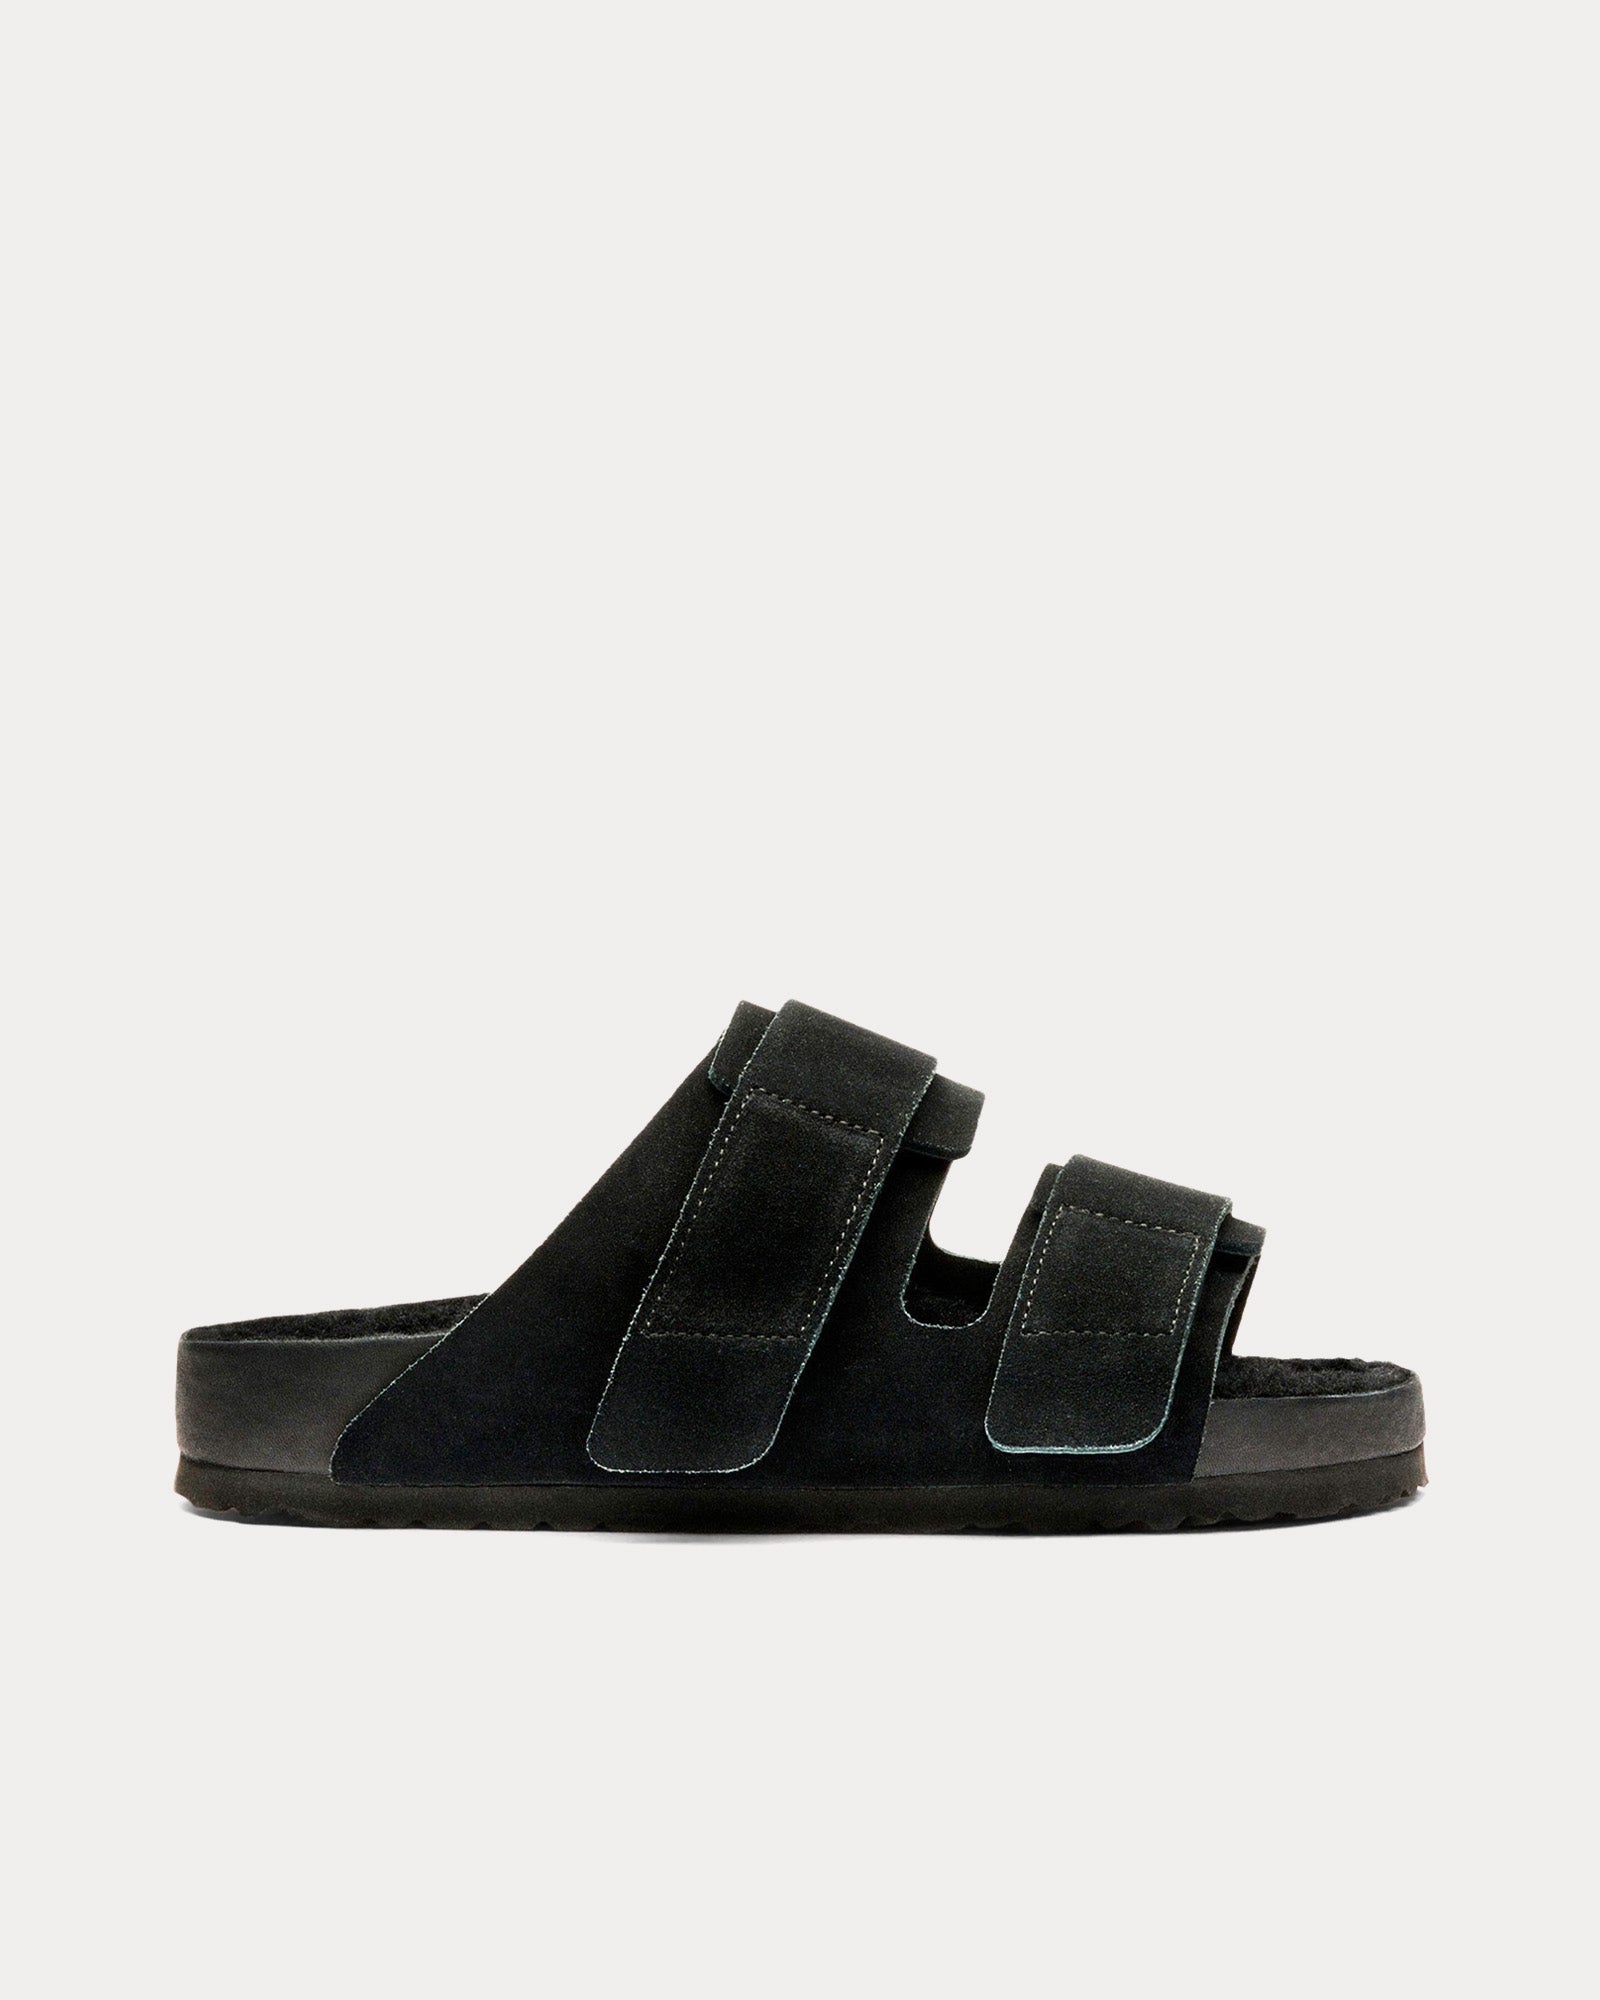 Birkenstock x Tekla - Uji Shearling Slate Sandals